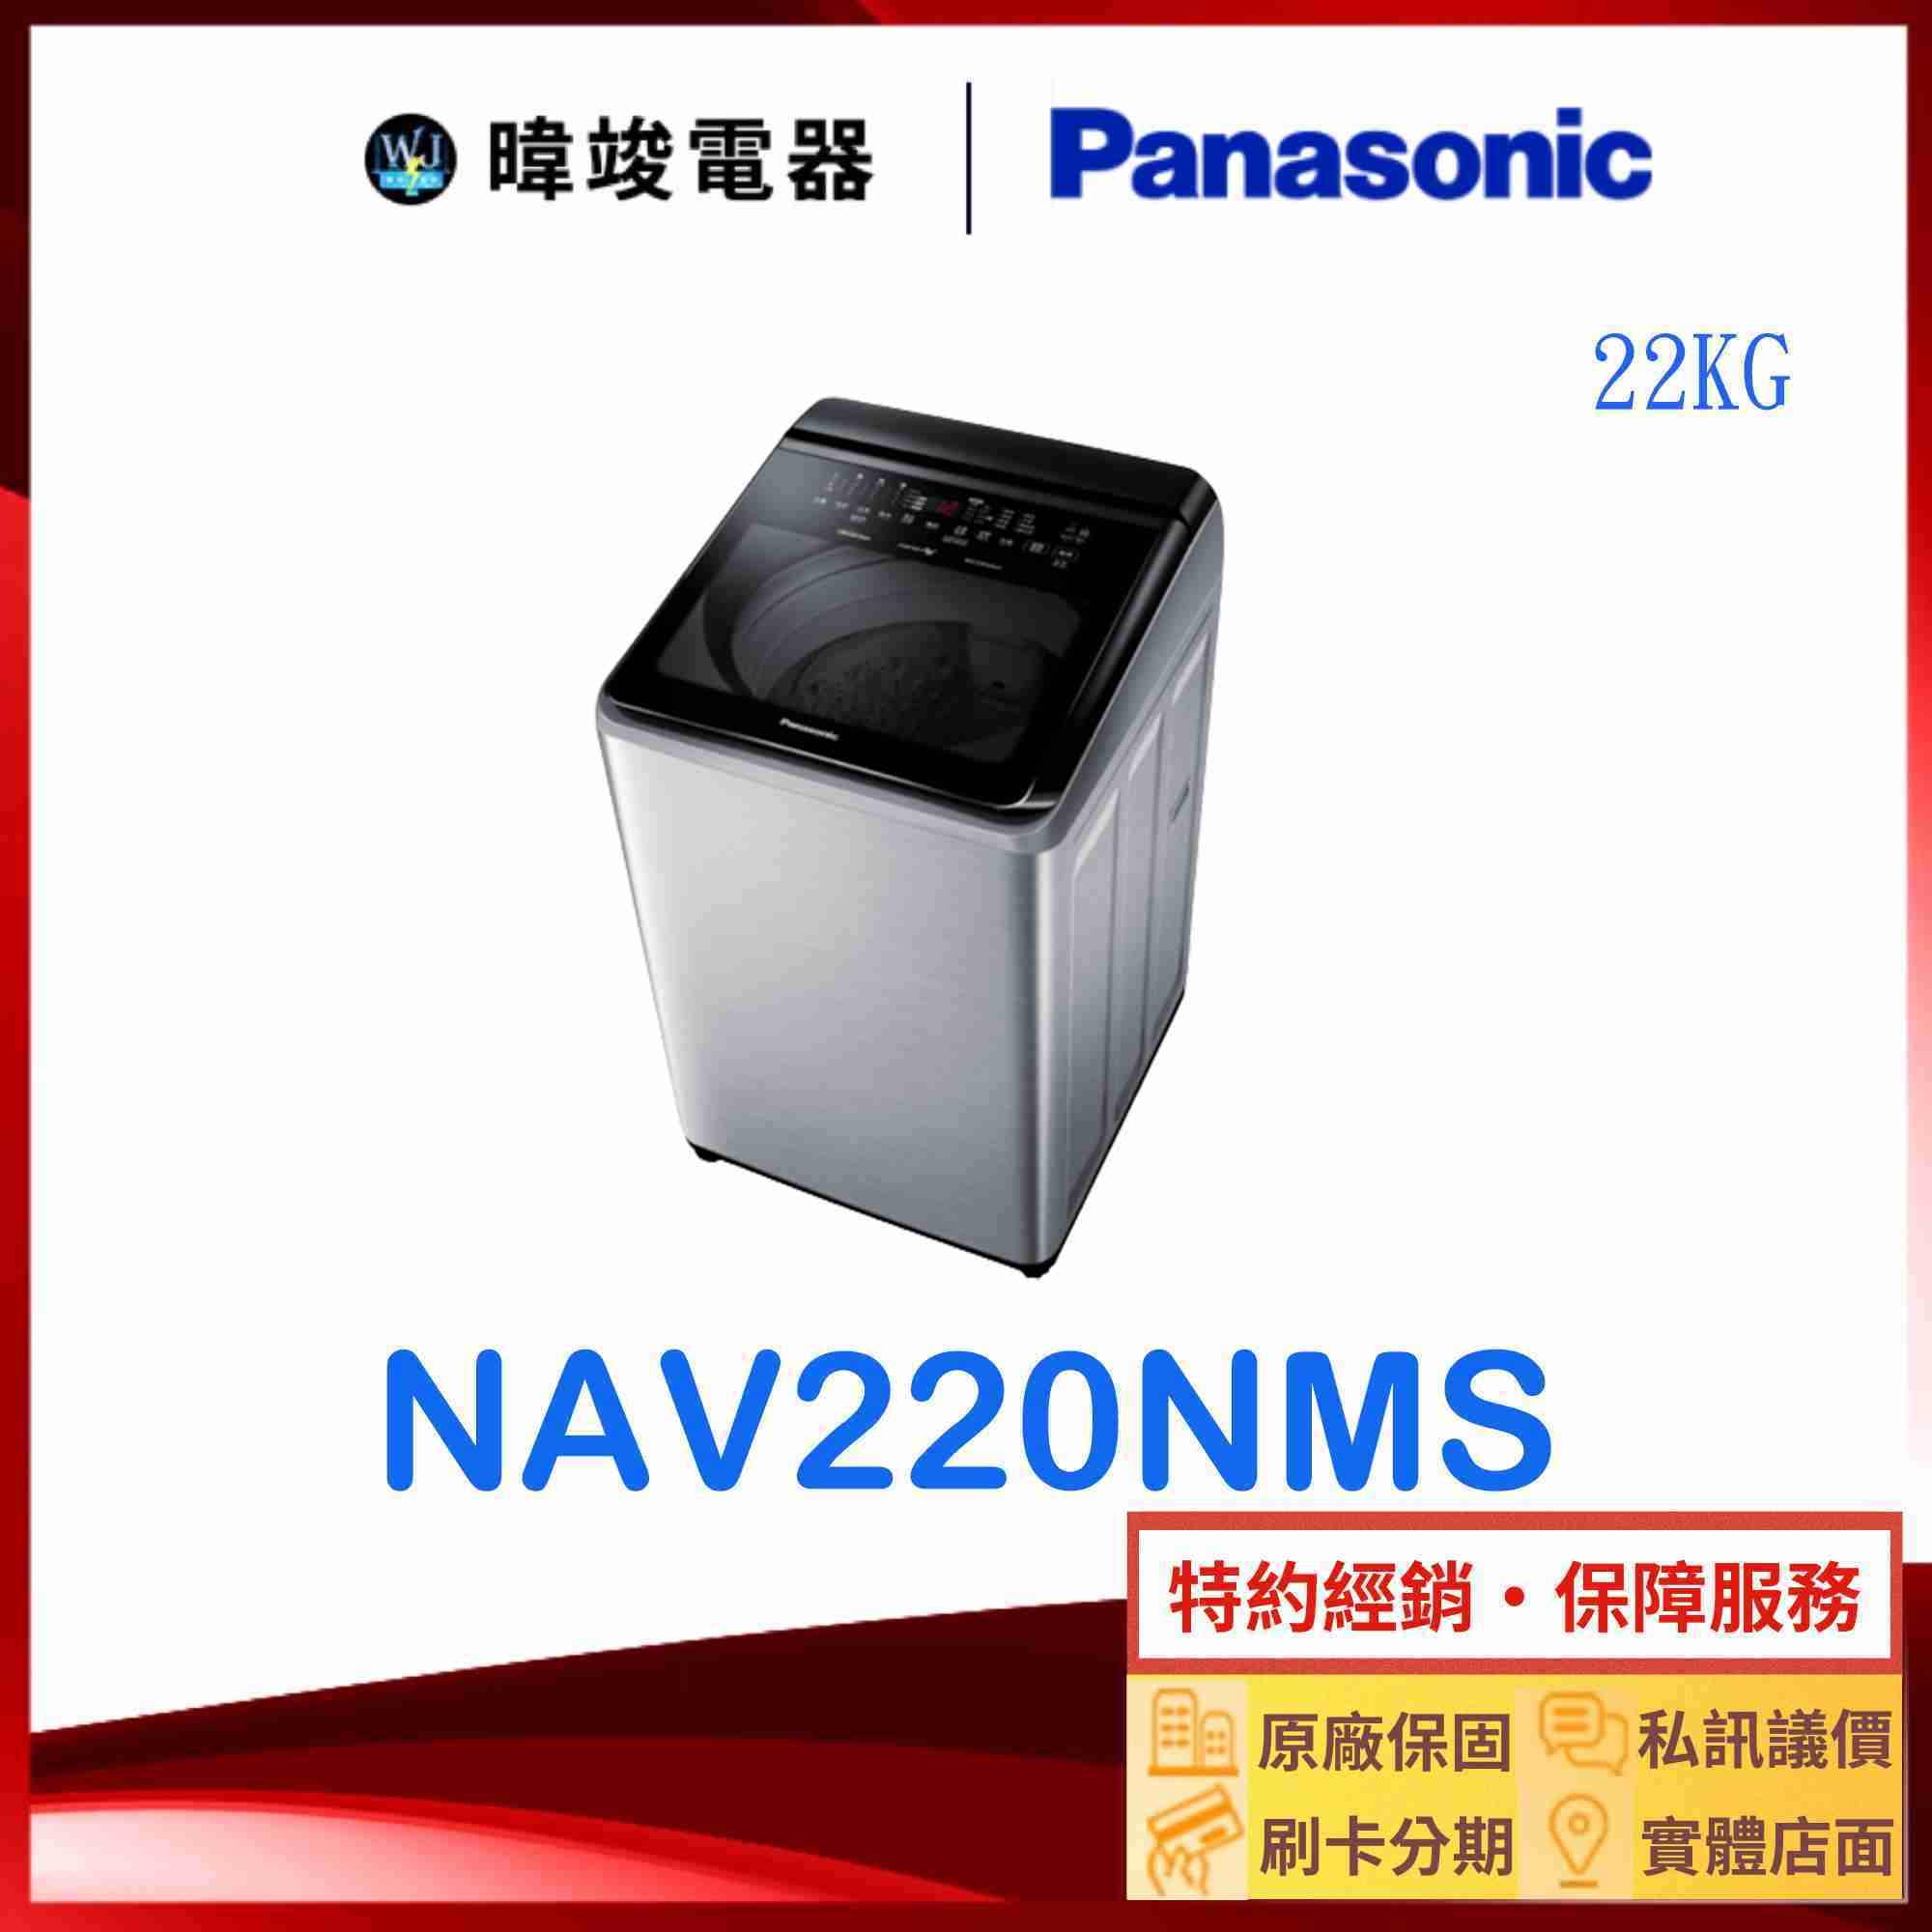 【暐竣電器】Panasonic 國際牌 NAV220NMS 22公斤洗衣機 NA-V220NMS 變頻智能聯網洗衣機